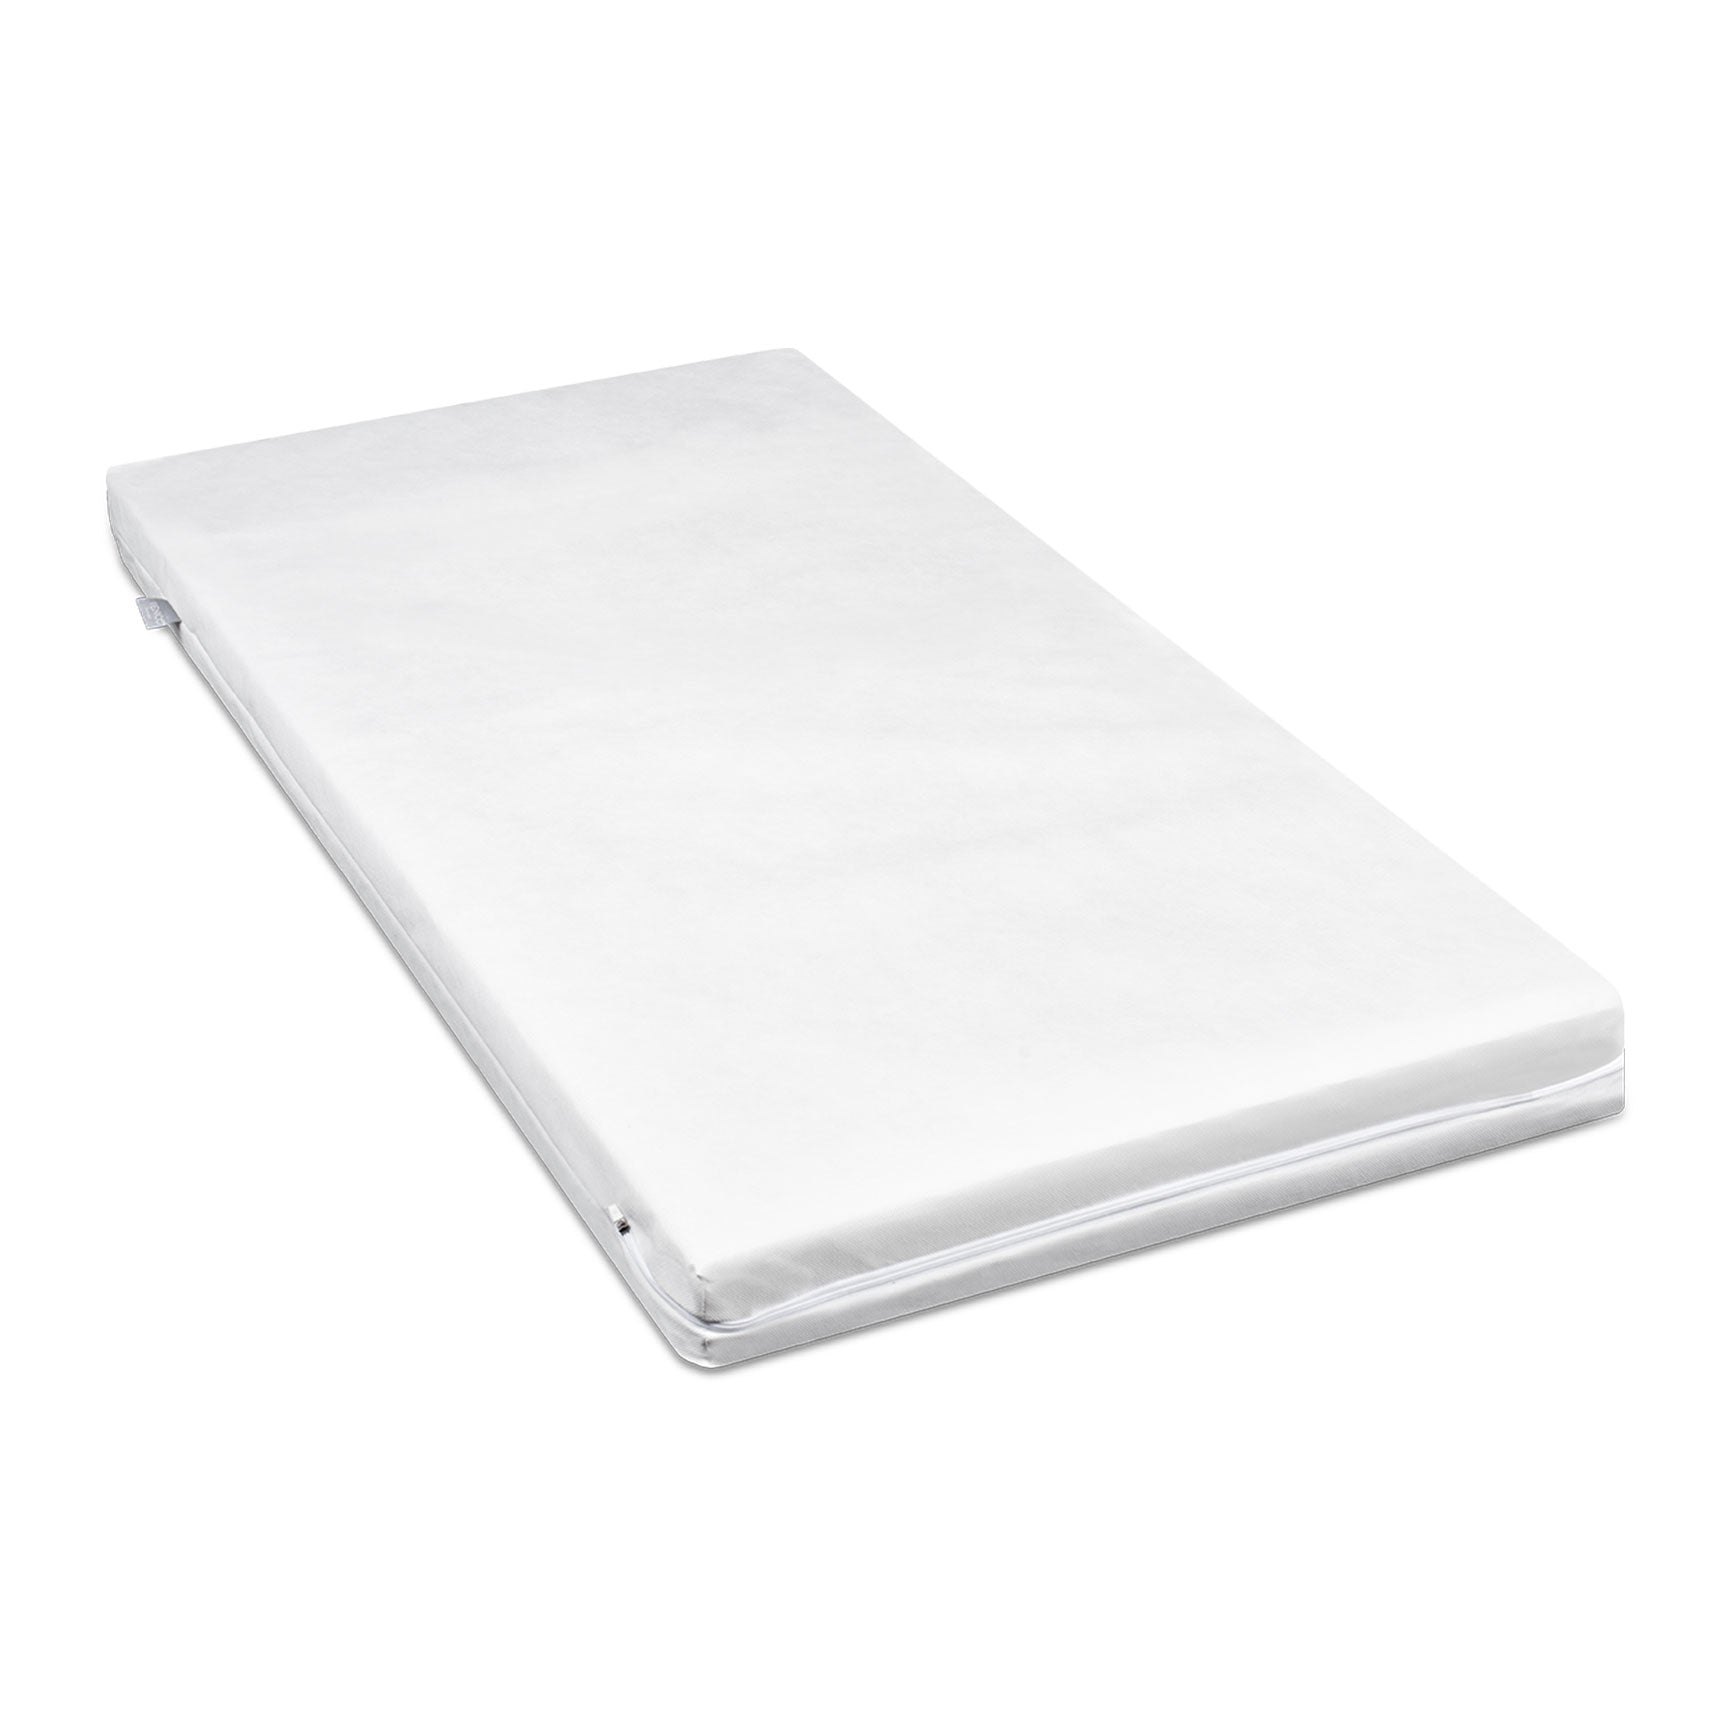 Venicci Cot Beds Venicci Saluzzo Graphite Cot Bed in Premium White 12662-WHT